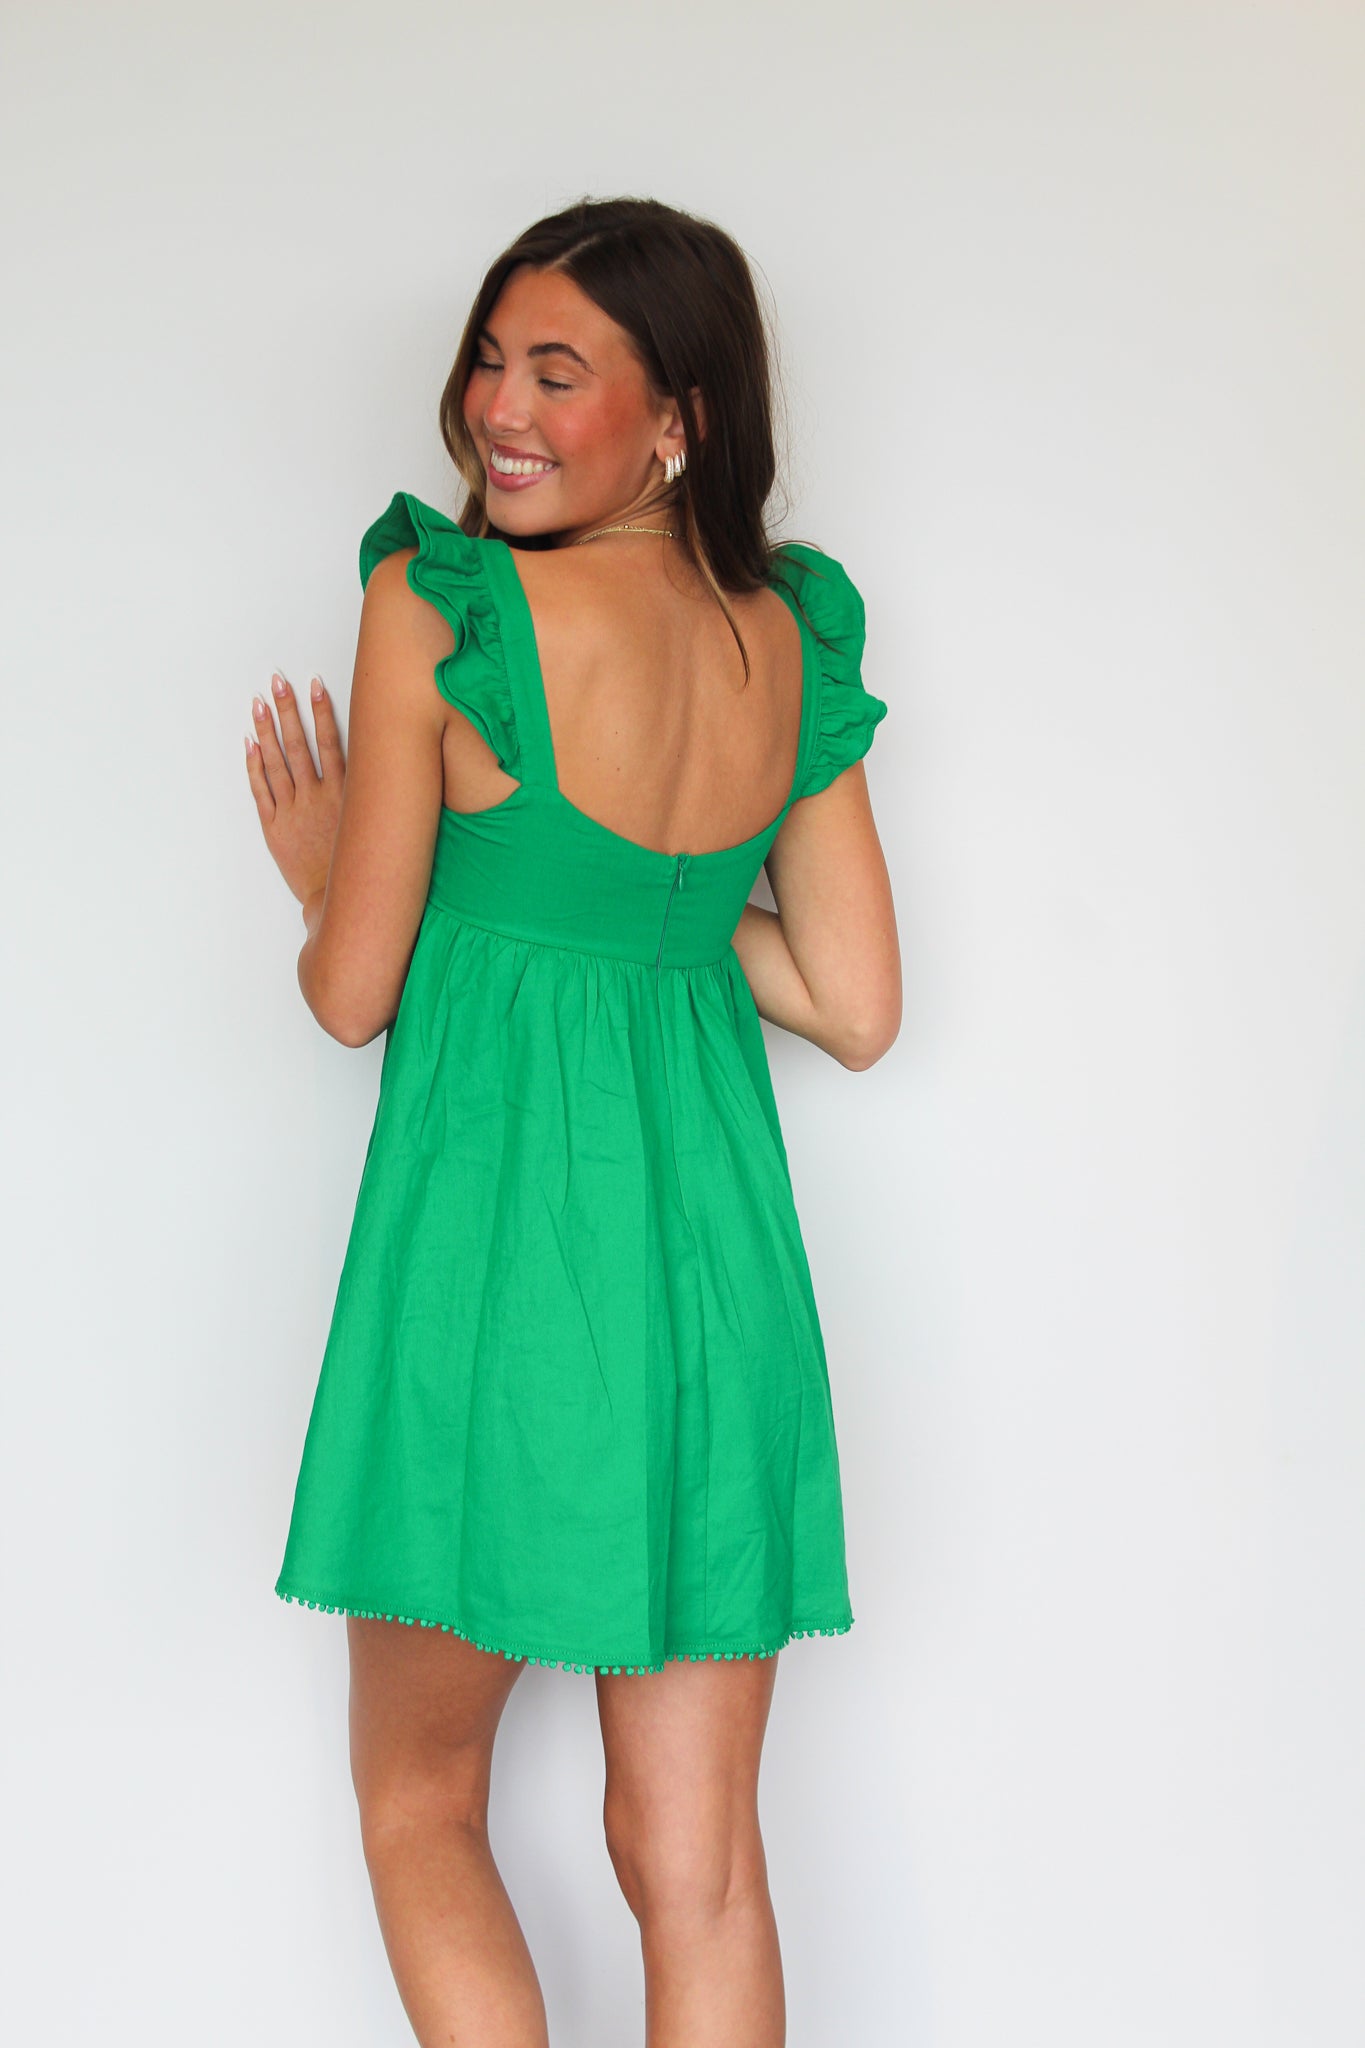 Square Neck Green Mini Dress-170 - DRESSES / ROMPERS / SETS-THE VINTAGE SHOP-[option4]-[option5]-[option6]-Leather & Lace Boutique Shop